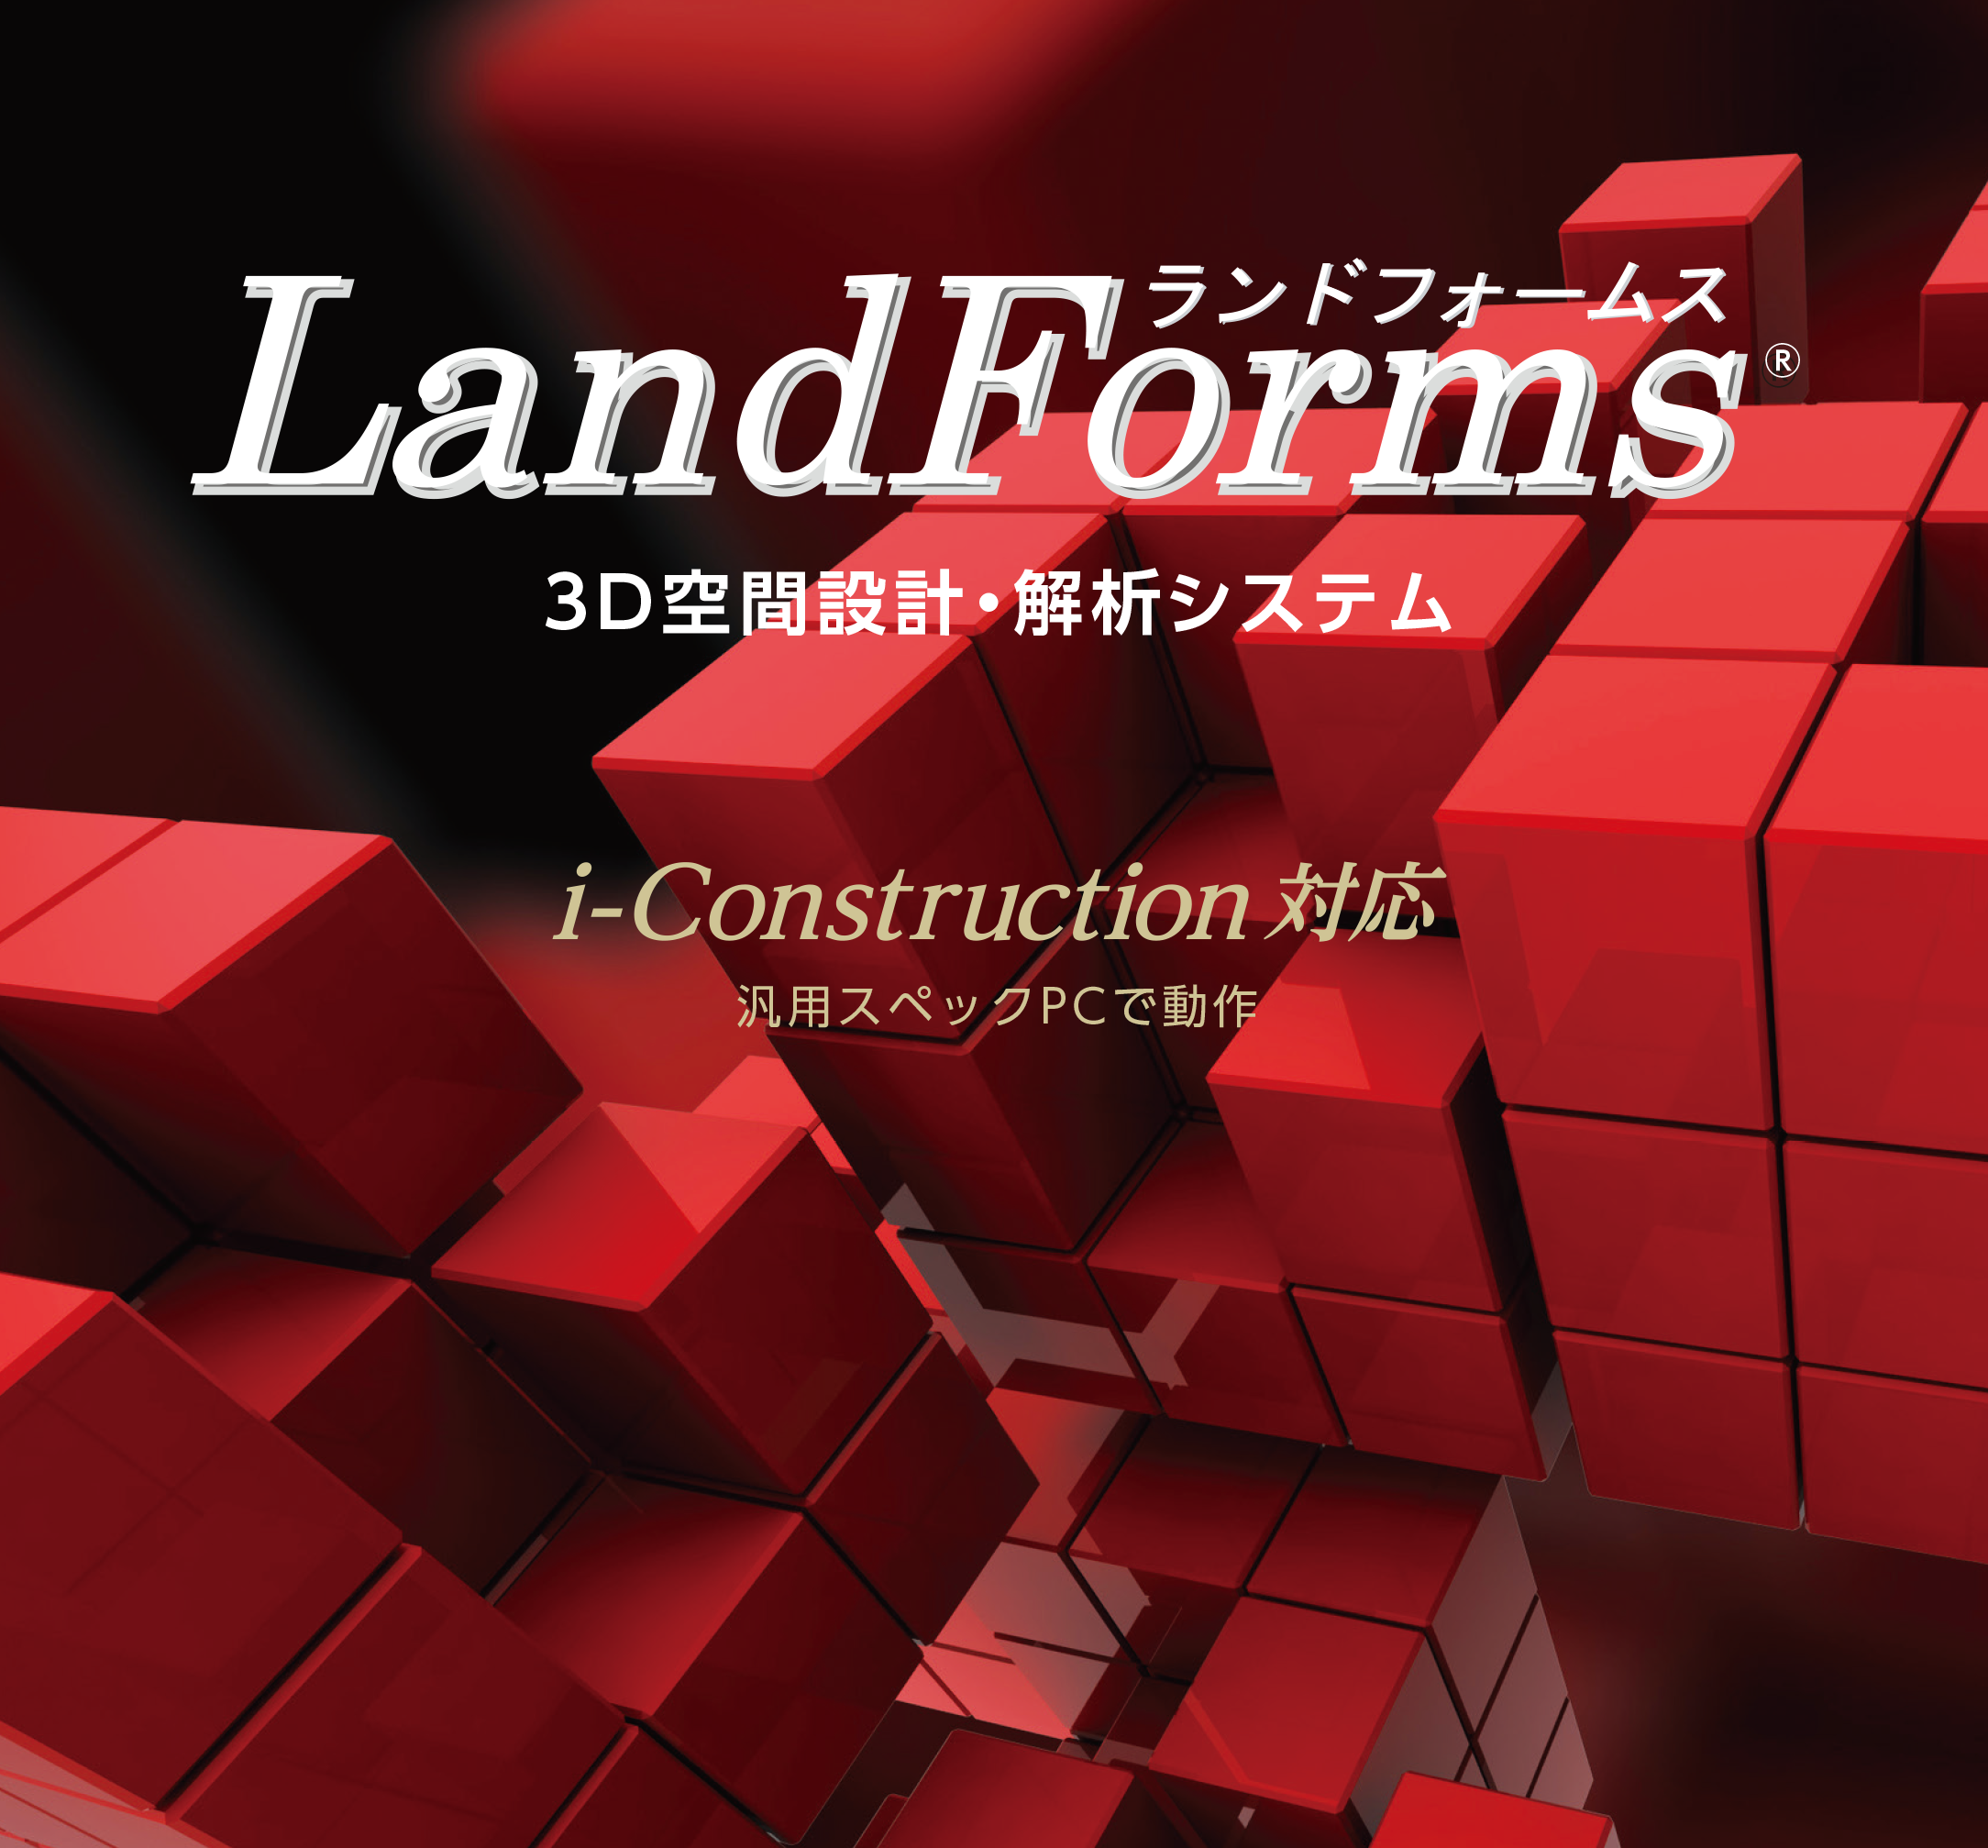 LandForms 3D空間設計・解析システム